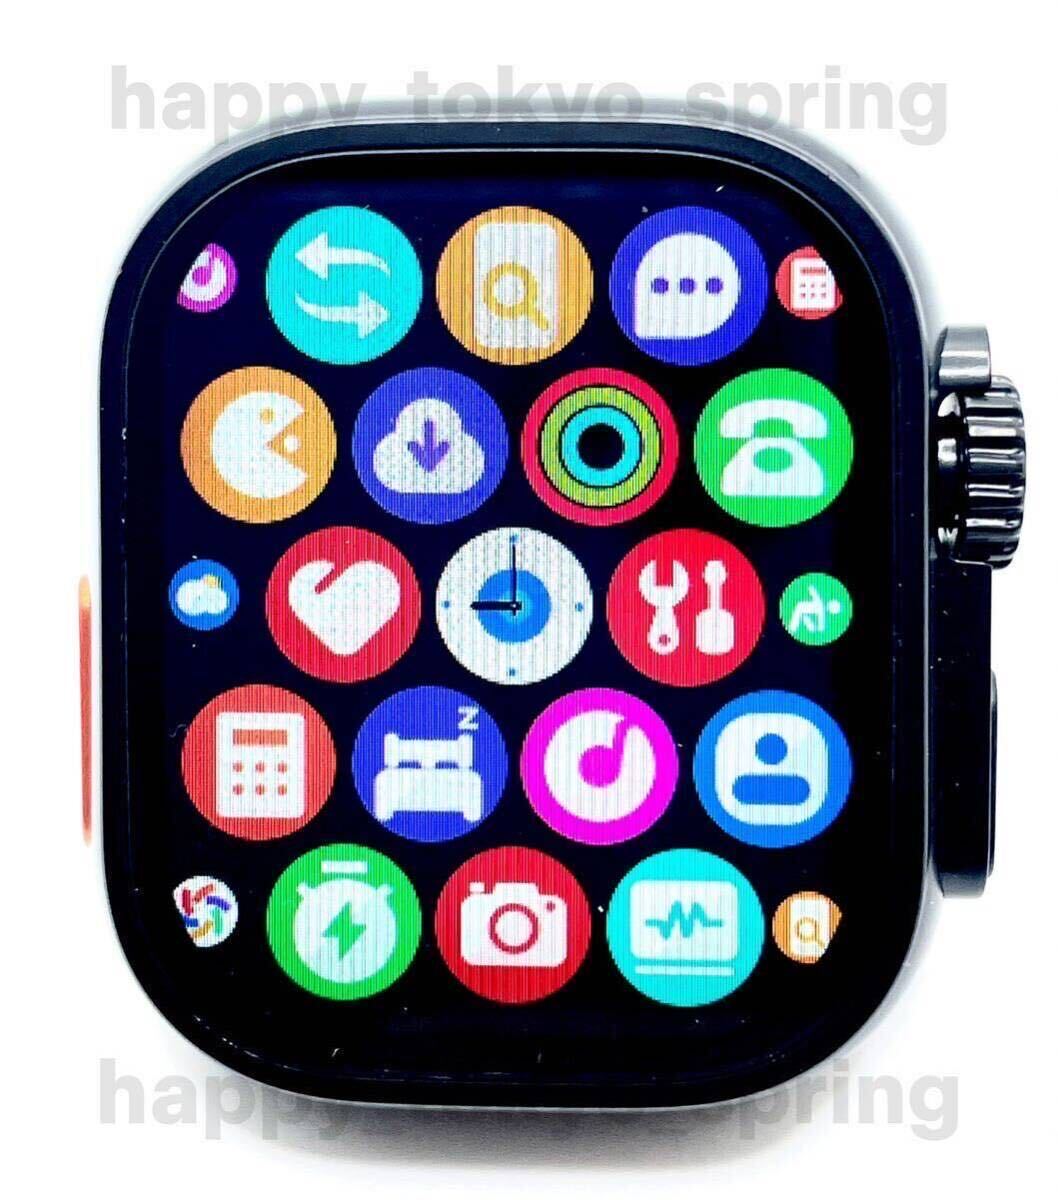 新品 HK9 Ultra Black Edition 2.19インチ 大画面 S9 スマートウォッチ 通話 音楽 多機能 健康 血中酸素 血圧 Apple Watch9 代替品.の画像2